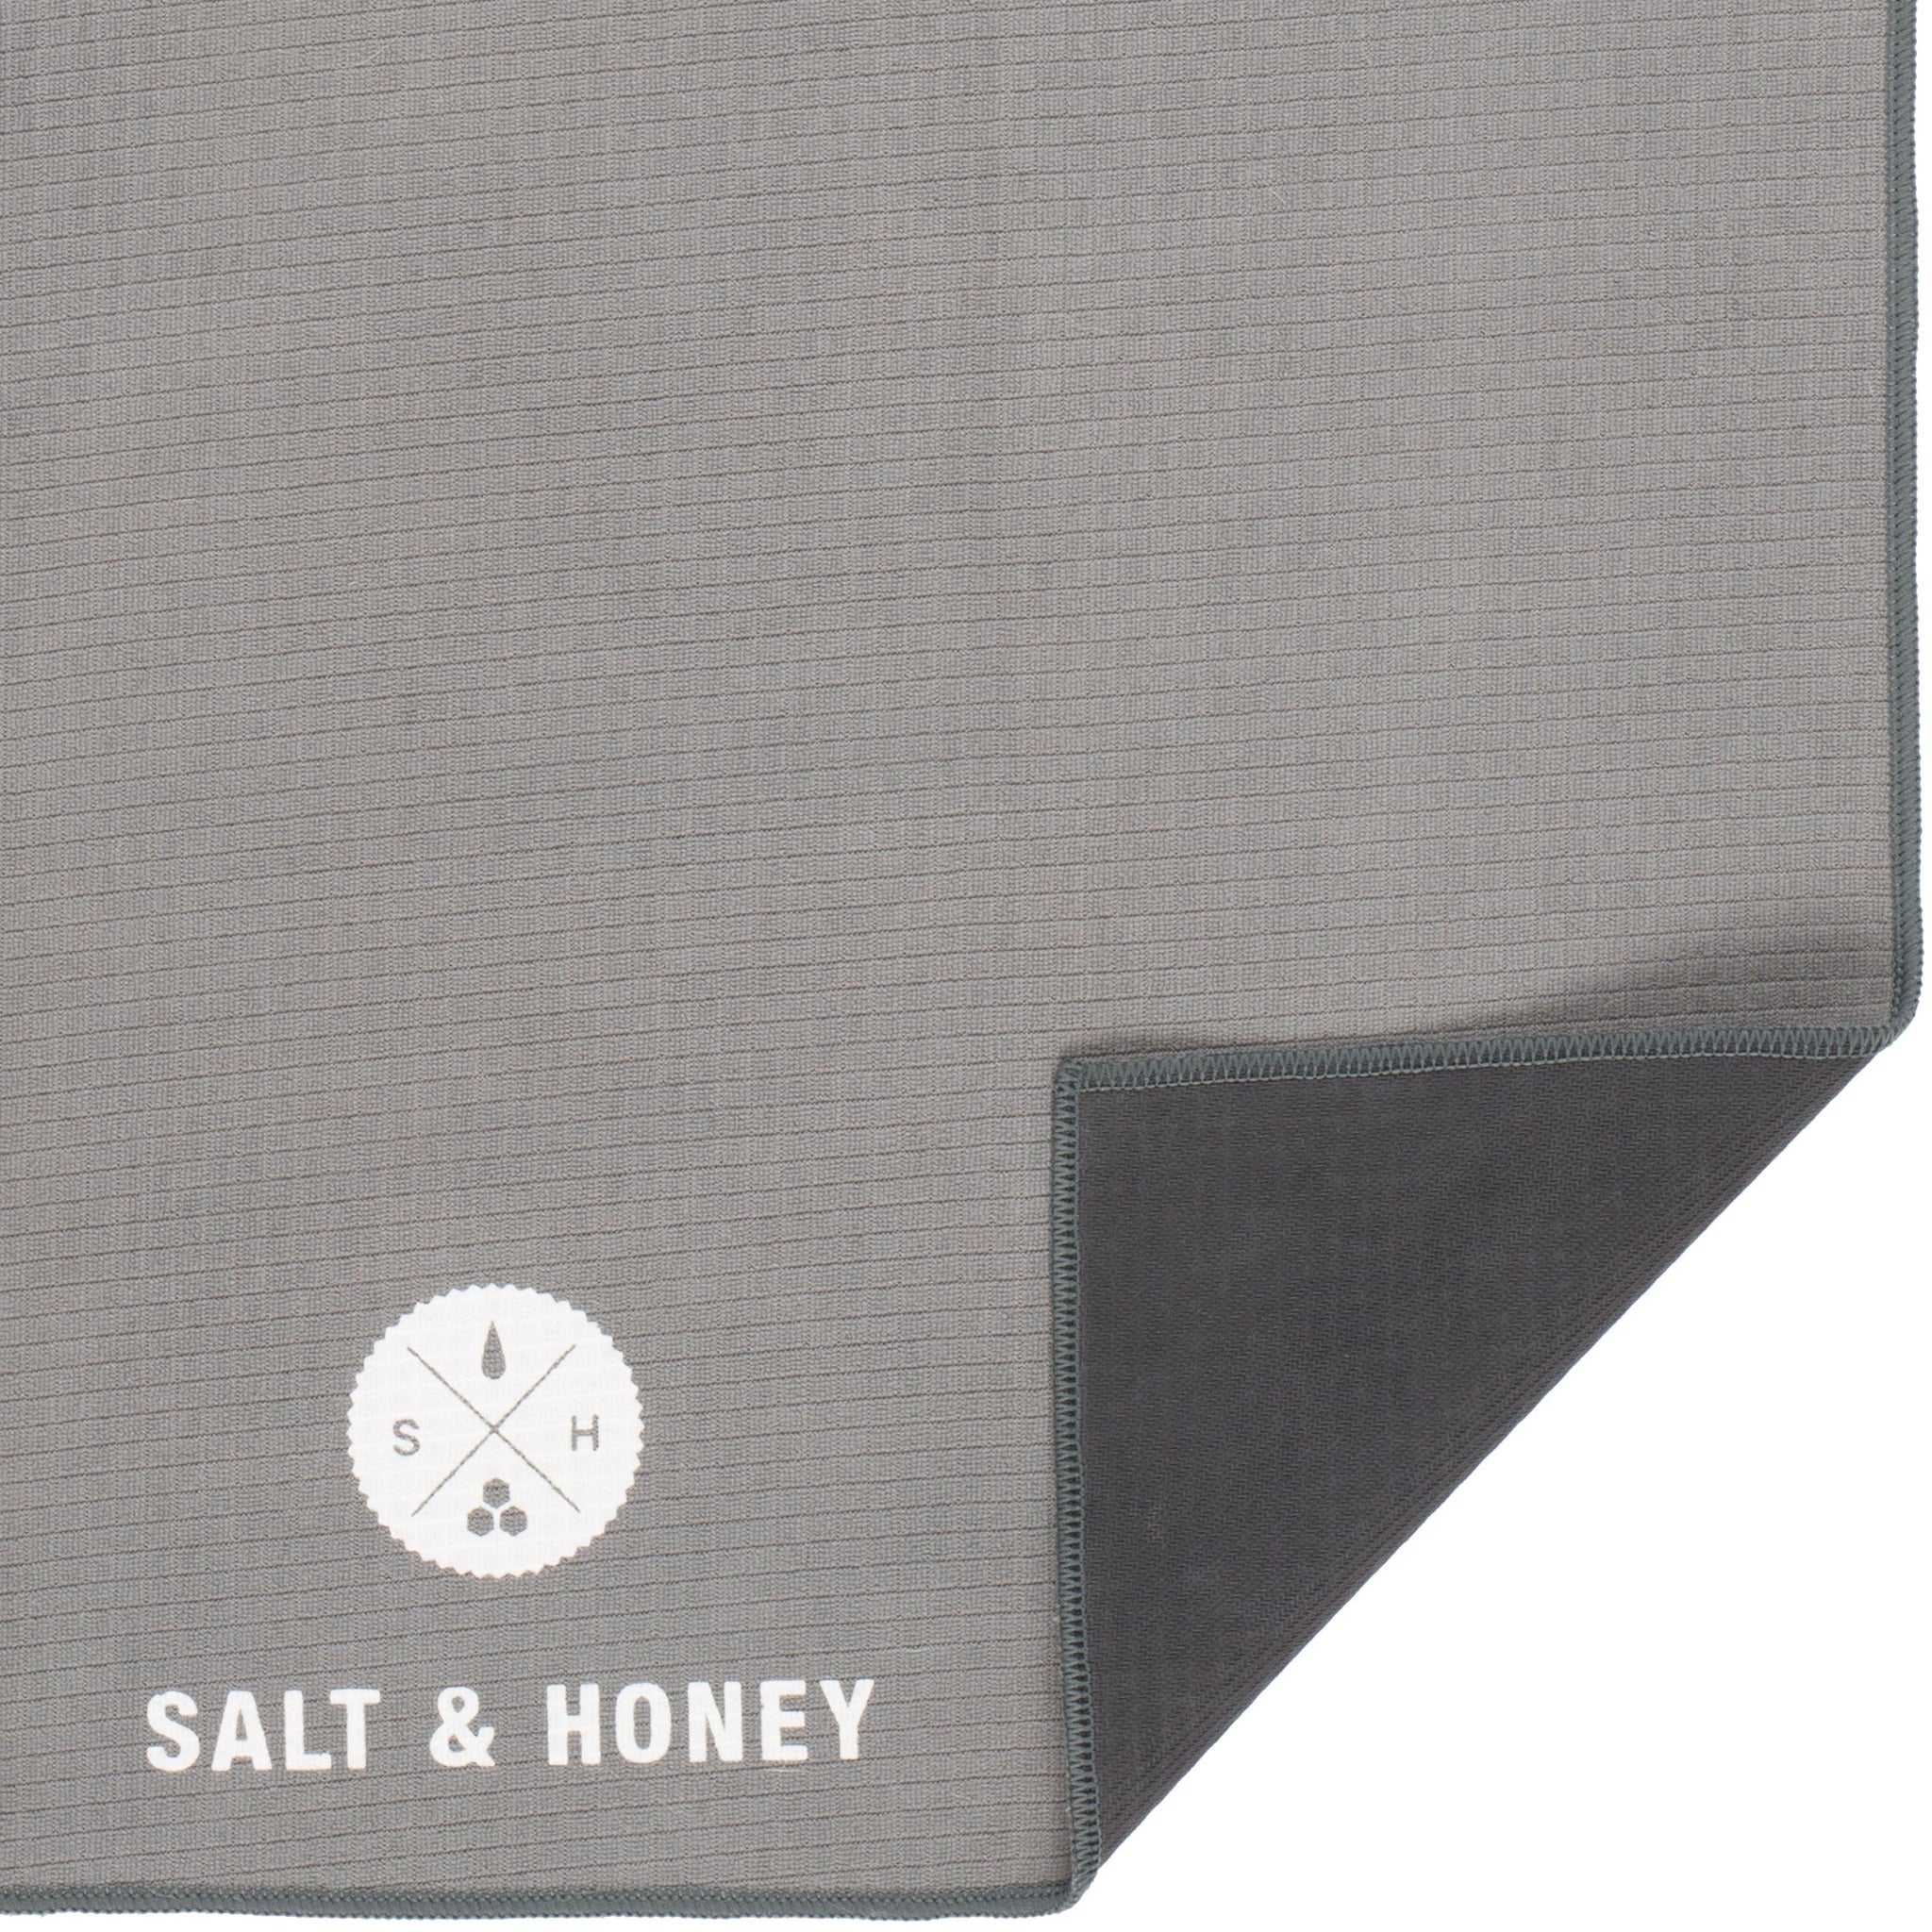 Non-Slip Pilates Reformer Towel - Buy 2 Save 15% – Salt & Honey